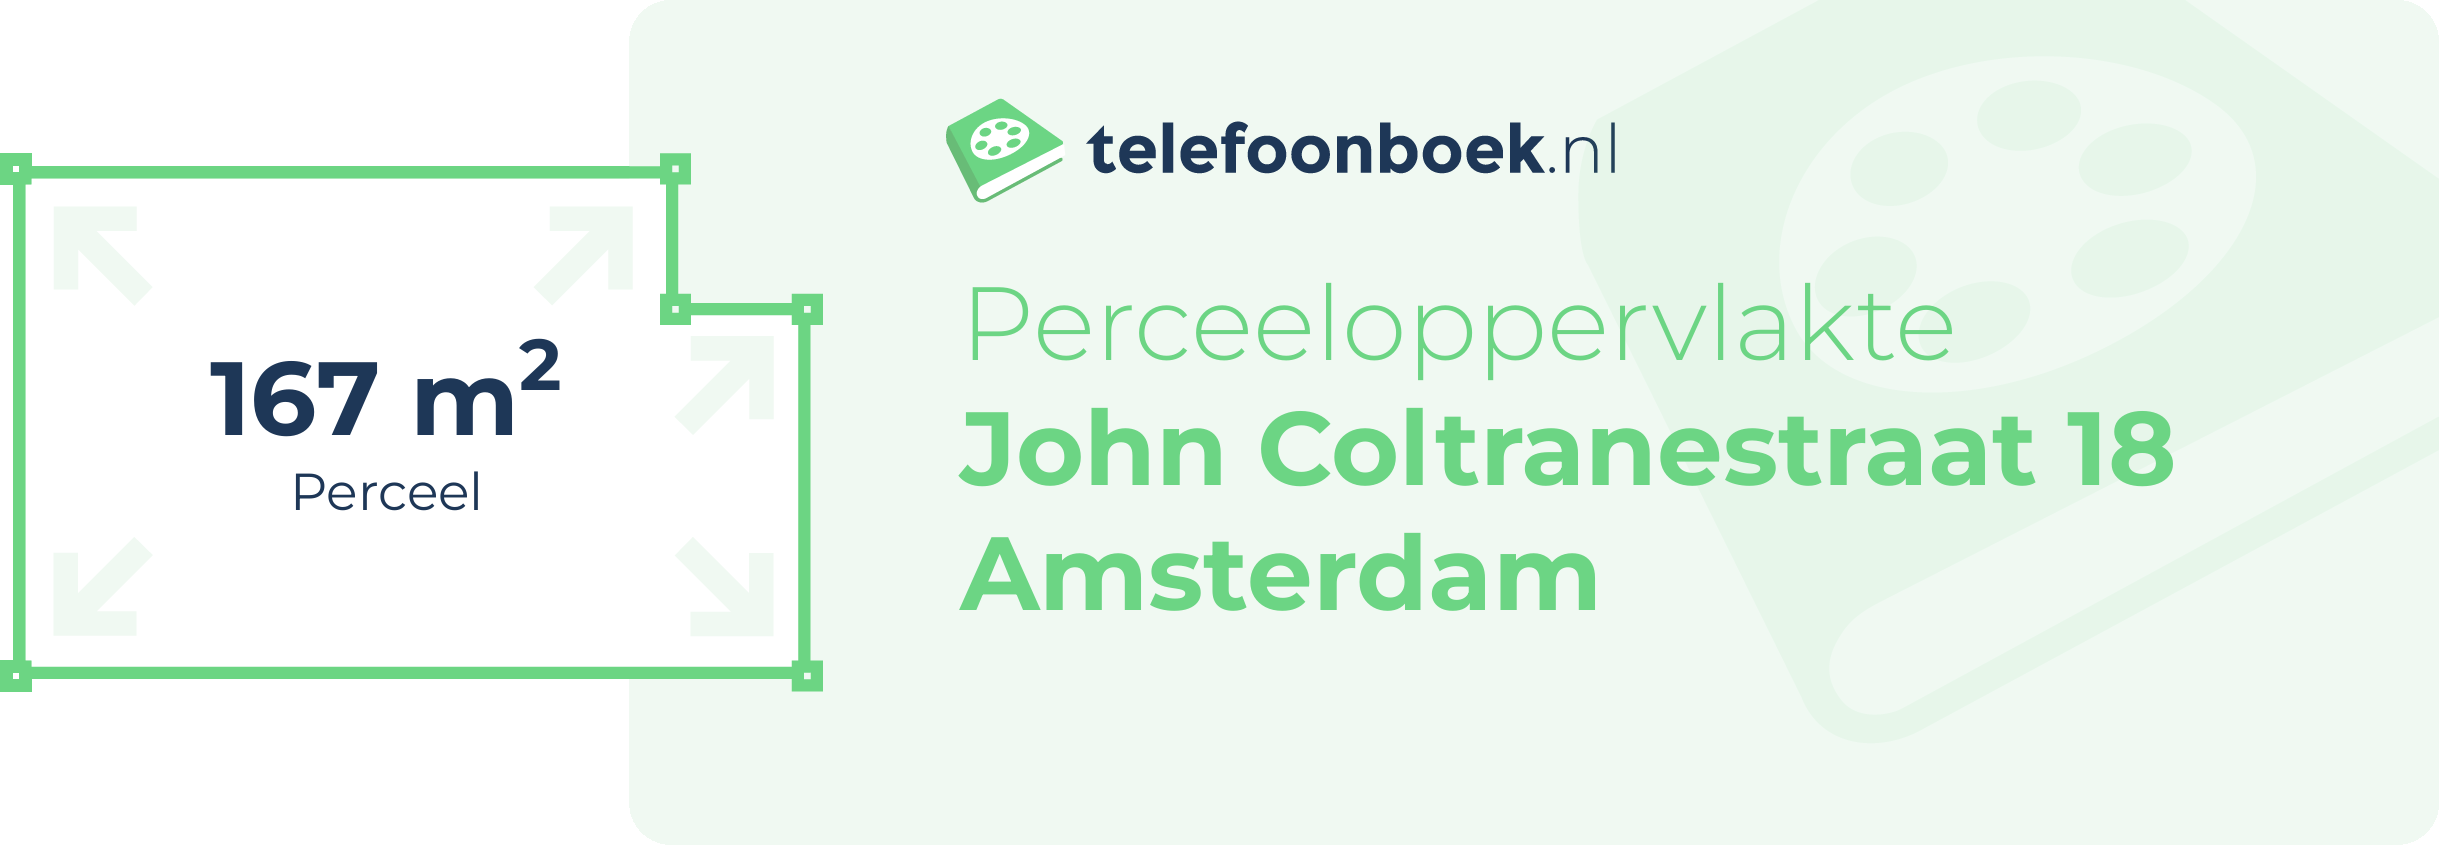 Perceeloppervlakte John Coltranestraat 18 Amsterdam